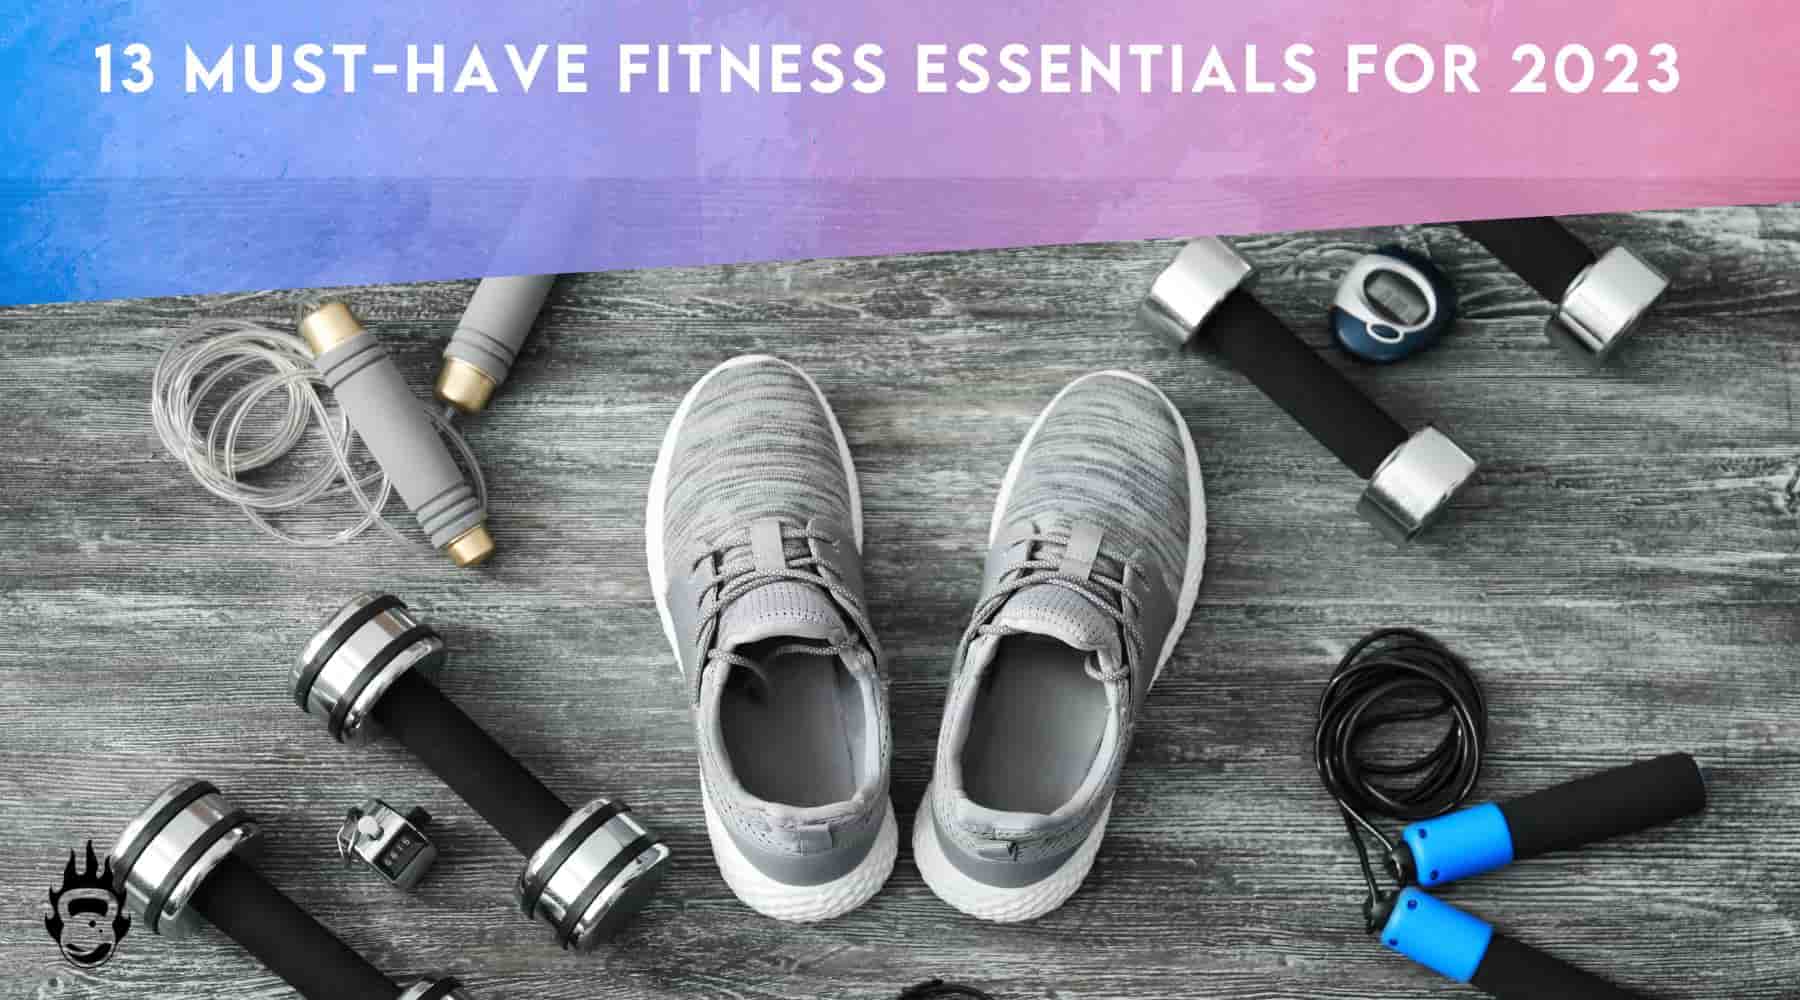 workout essentials